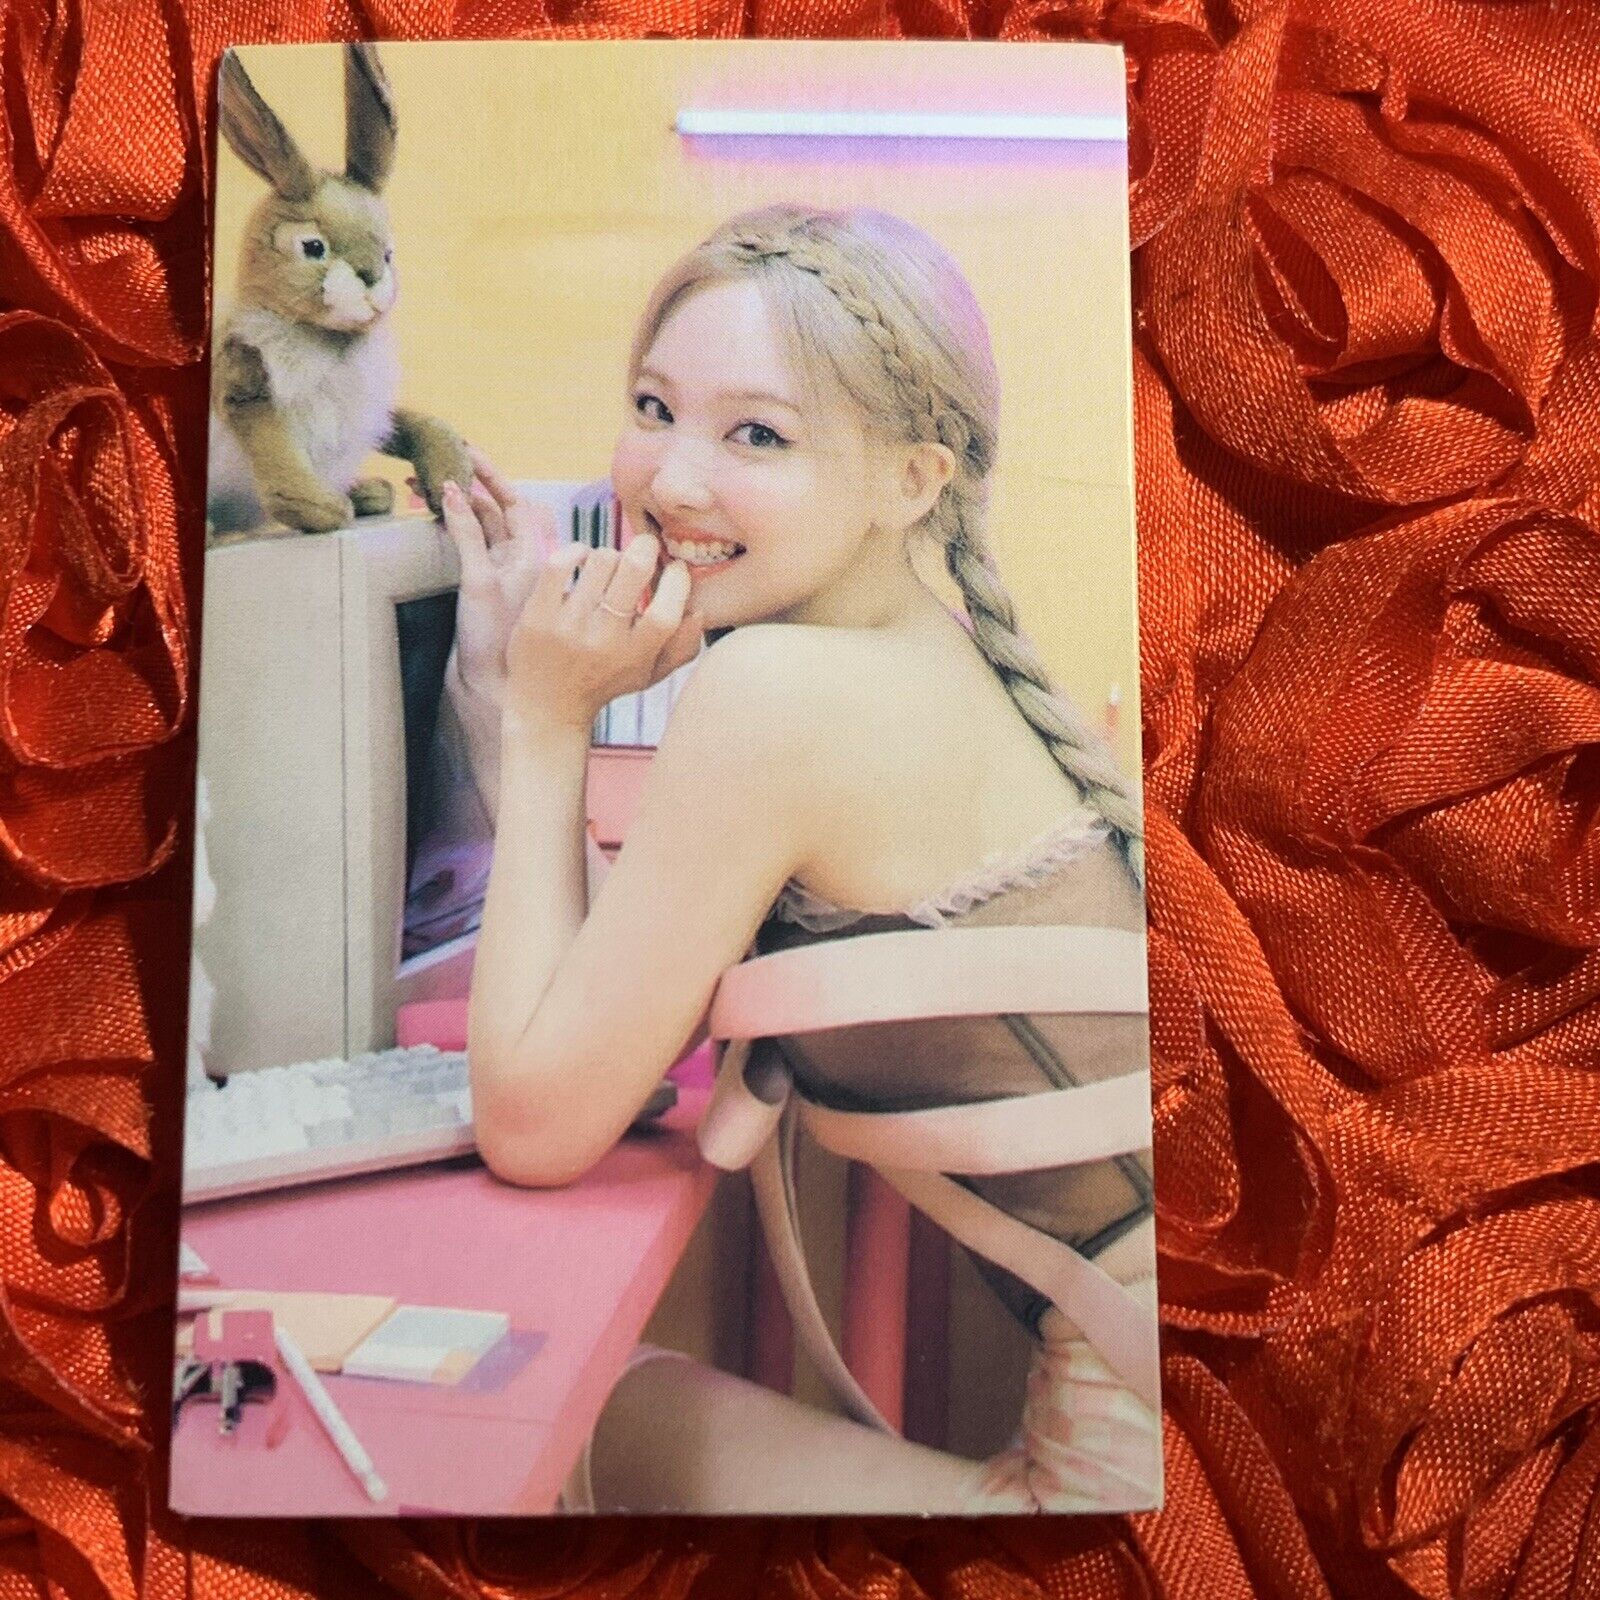 NAYEON TWICE 1&2 Edition Celeb K-pop Girl Photo Card Bunny